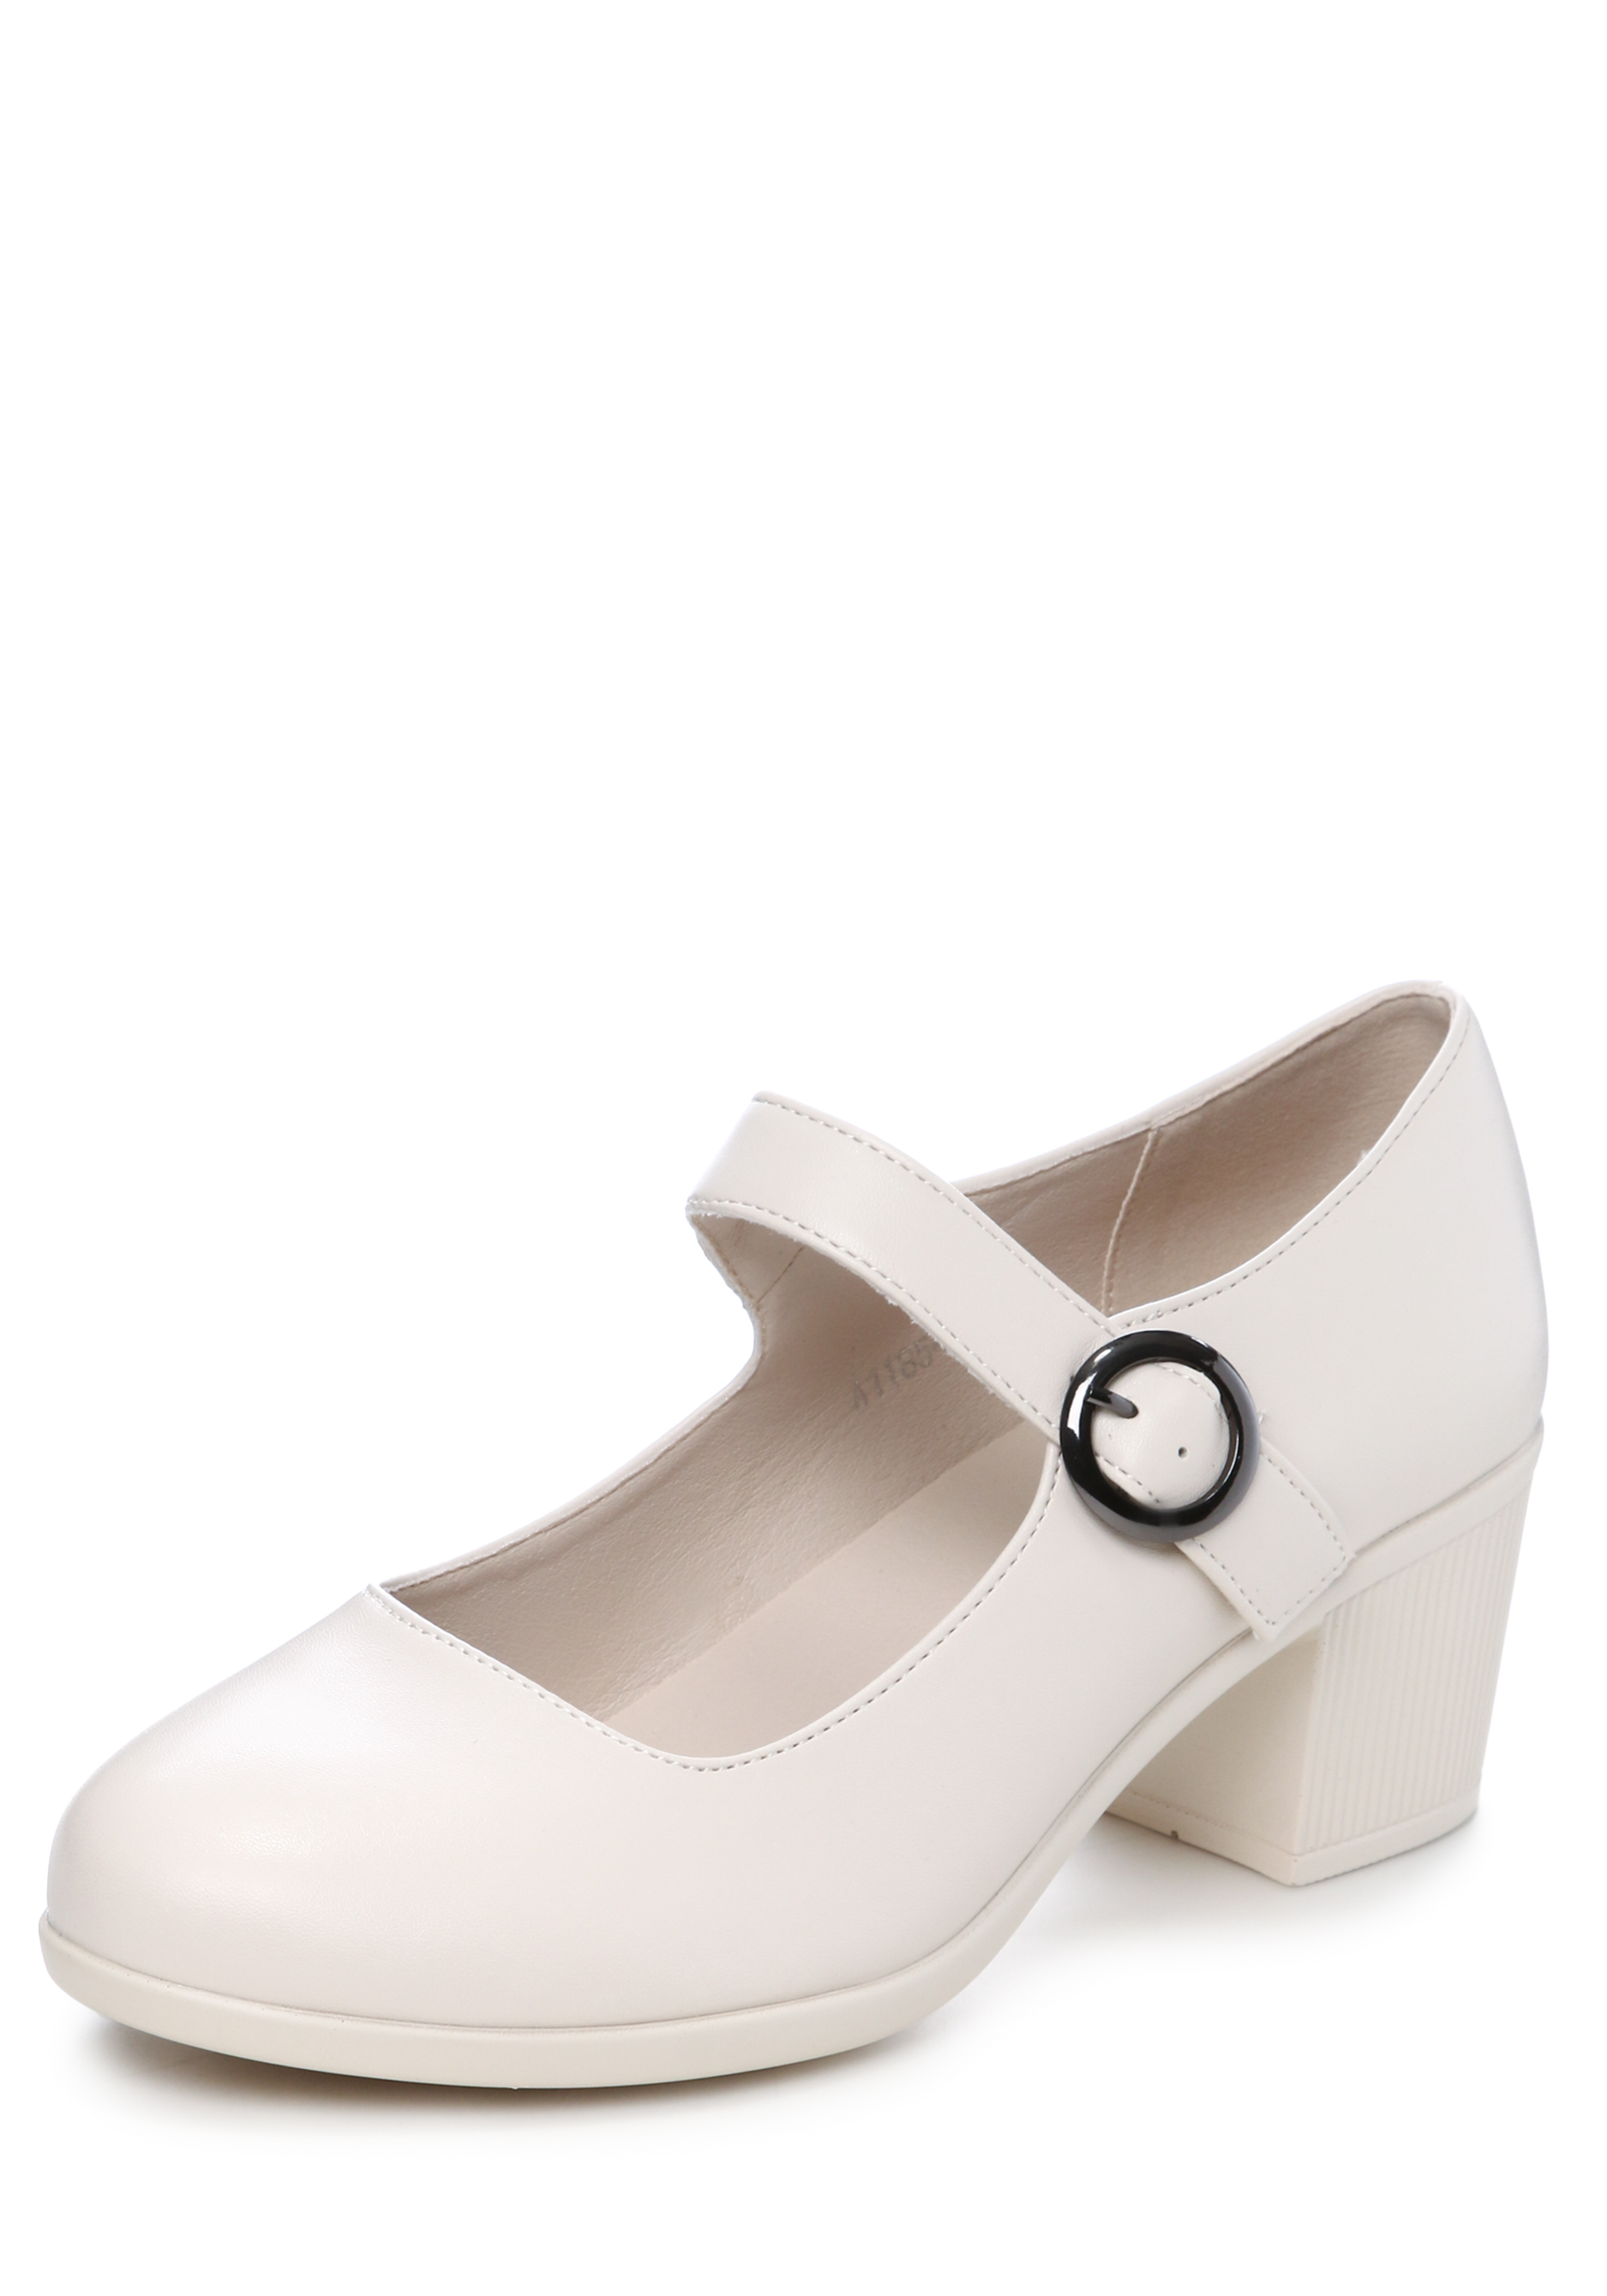 Туфли женские "Лайна", цвет белый, размер 37